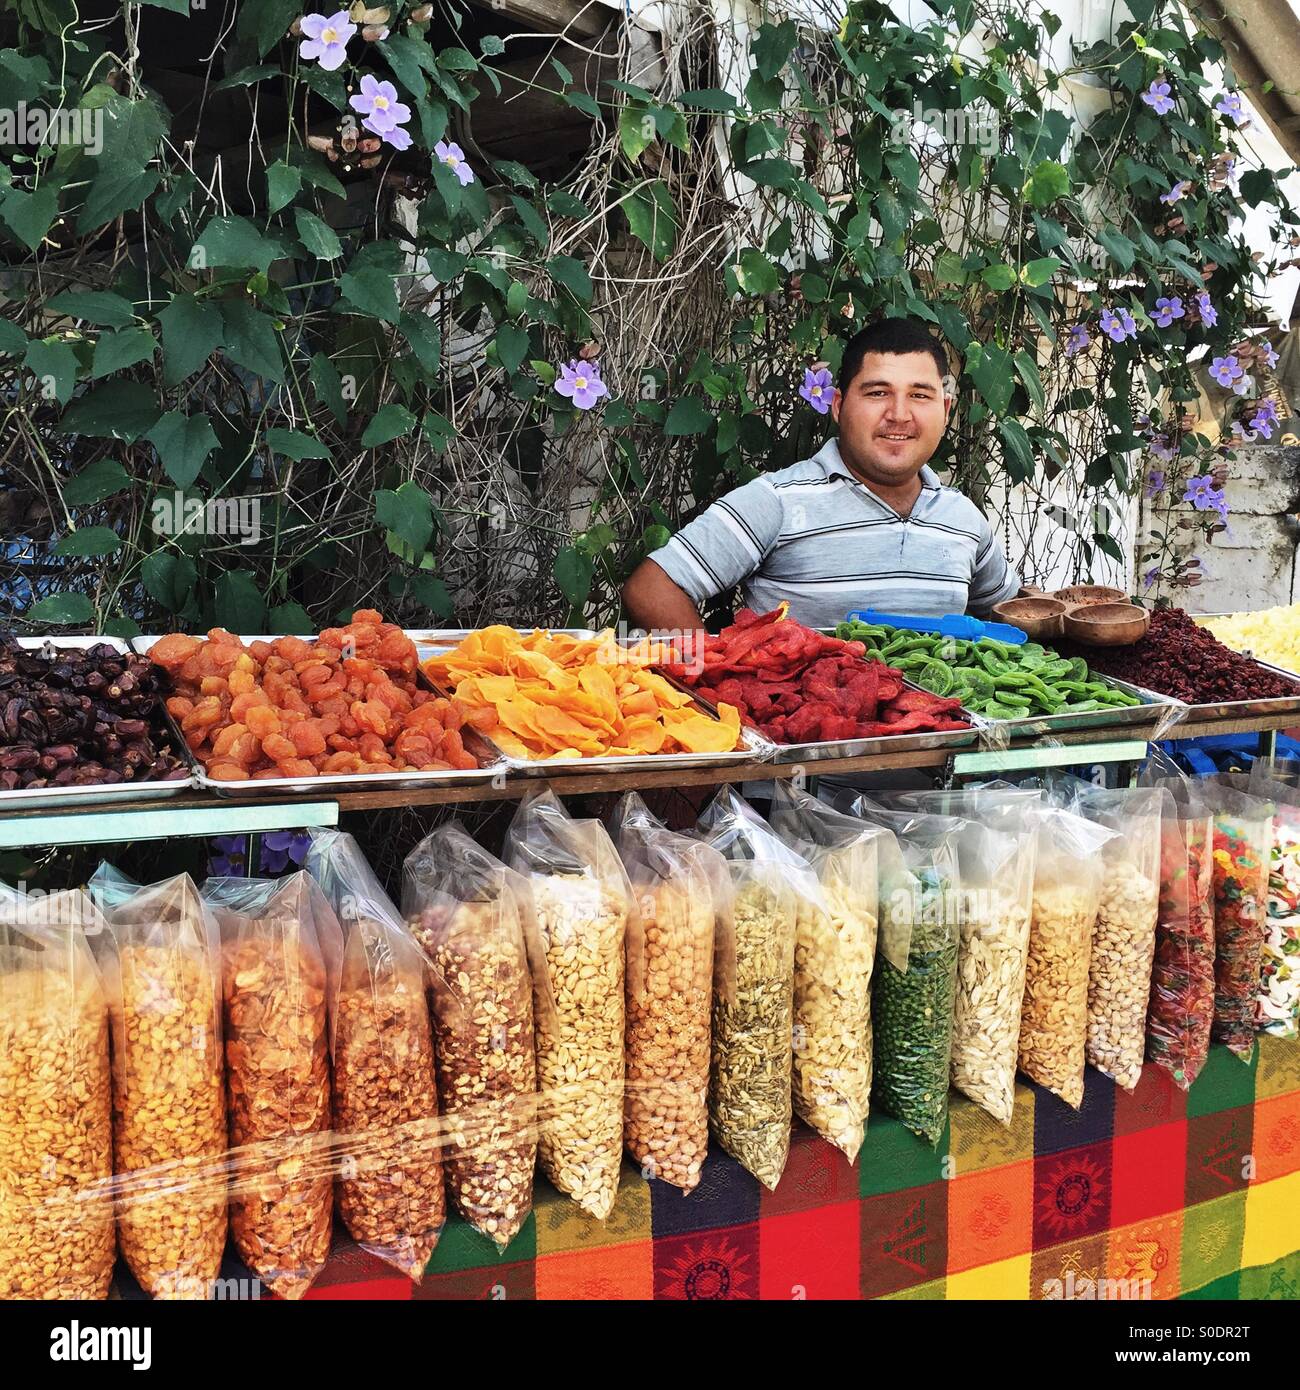 Einem Lächeln auf den Lippen Straßenhändler zeigt eine köstliche Auswahl an getrockneten Früchten, Süßigkeiten, Nüssen und Samen in der Nähe der Marina La Cruz Bauernmarkt in La Cruz de Huanacaxle, Mexiko. Stockfoto